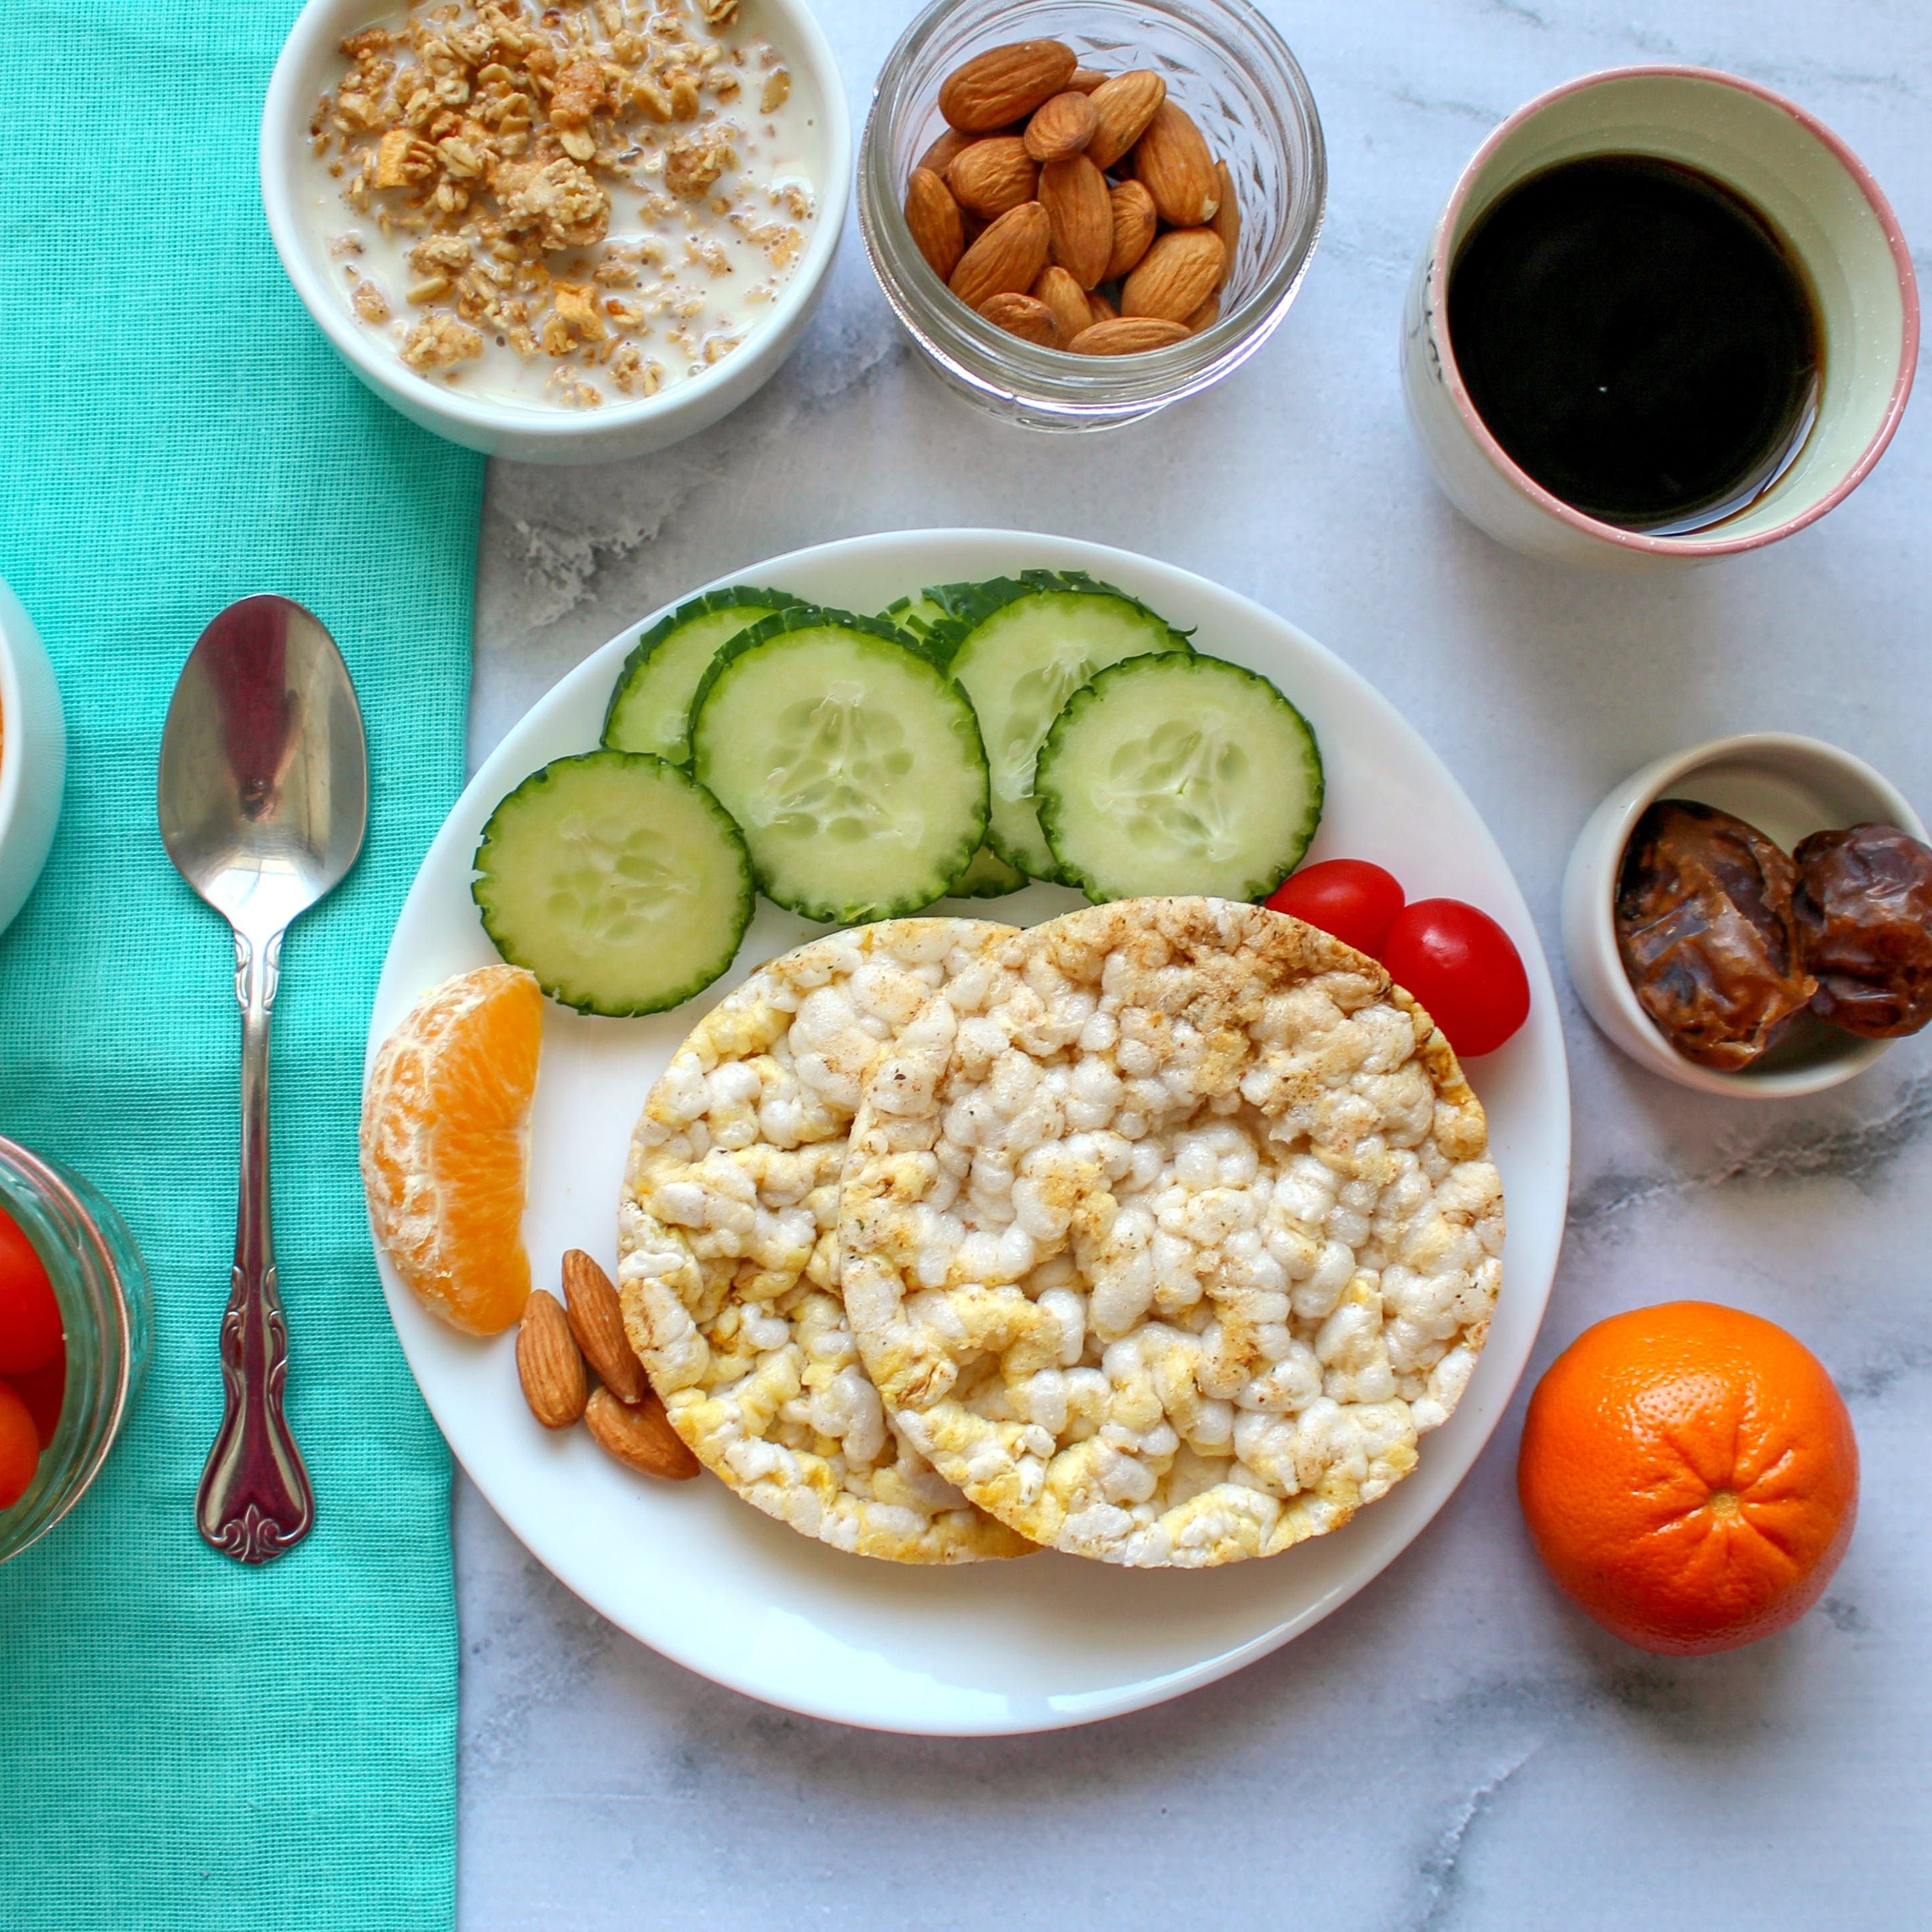 С чем поесть творог. Правильное питание завтрак. Полезный завтрак правильное. Здоровый и полезный завтрак. Вкусный и полезный завтрак.